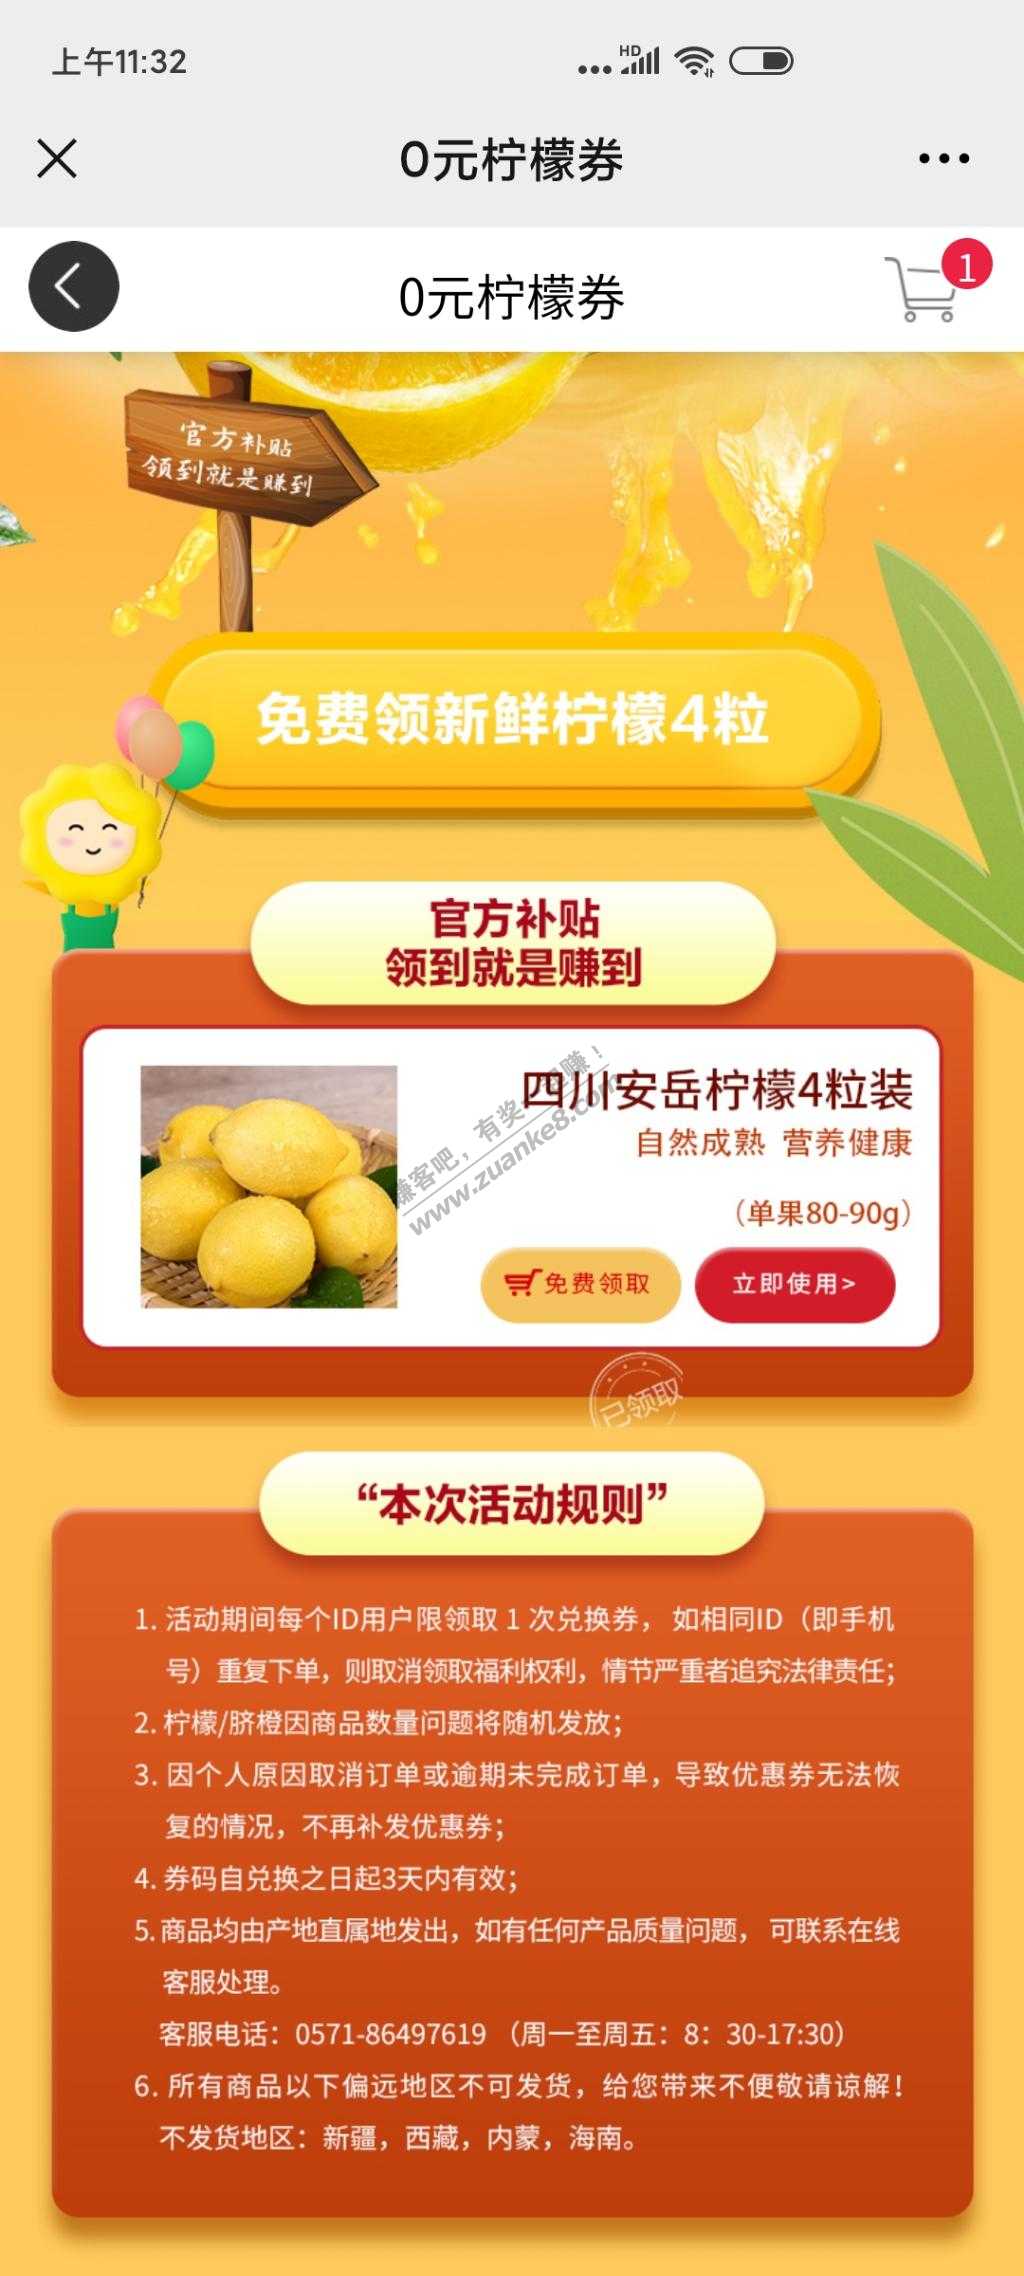 免费柠檬-惠小助(52huixz.com)